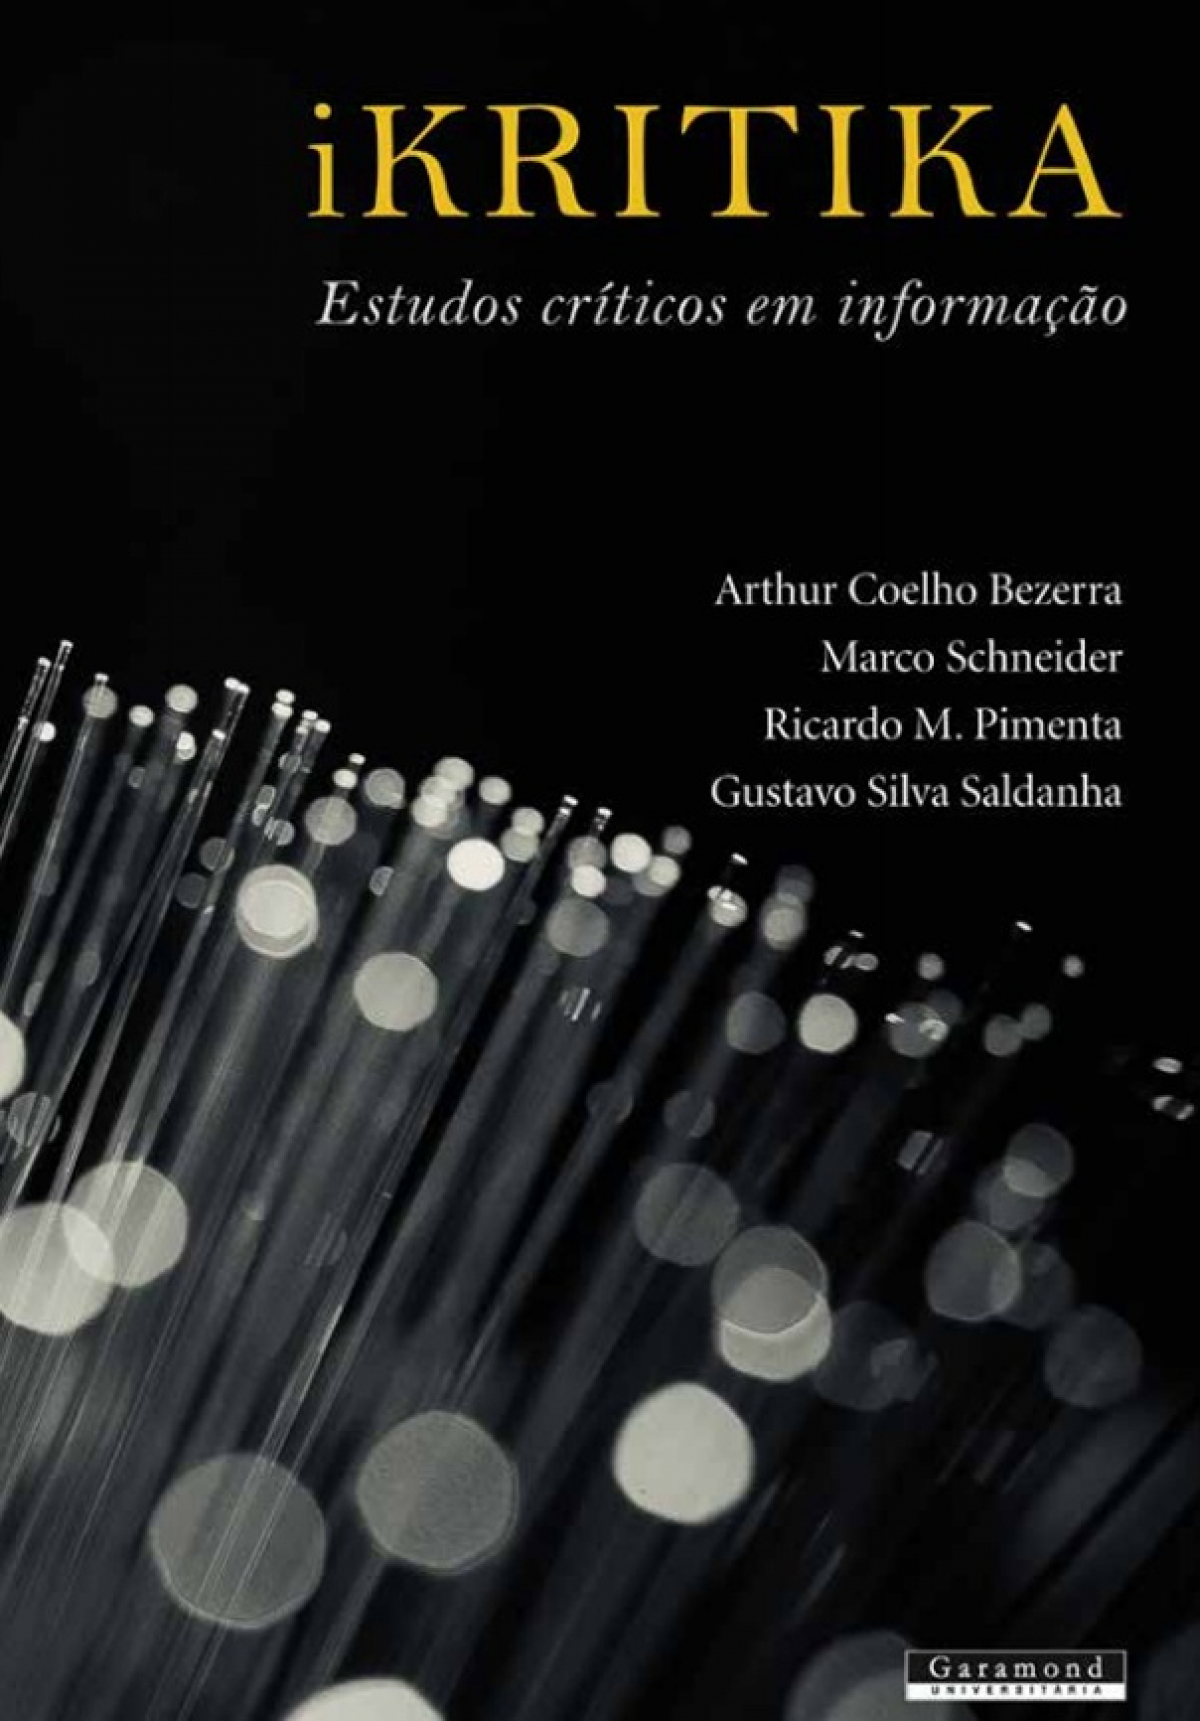 Livro “iKritika:estudos críticos em informação” disponível para download gratuito